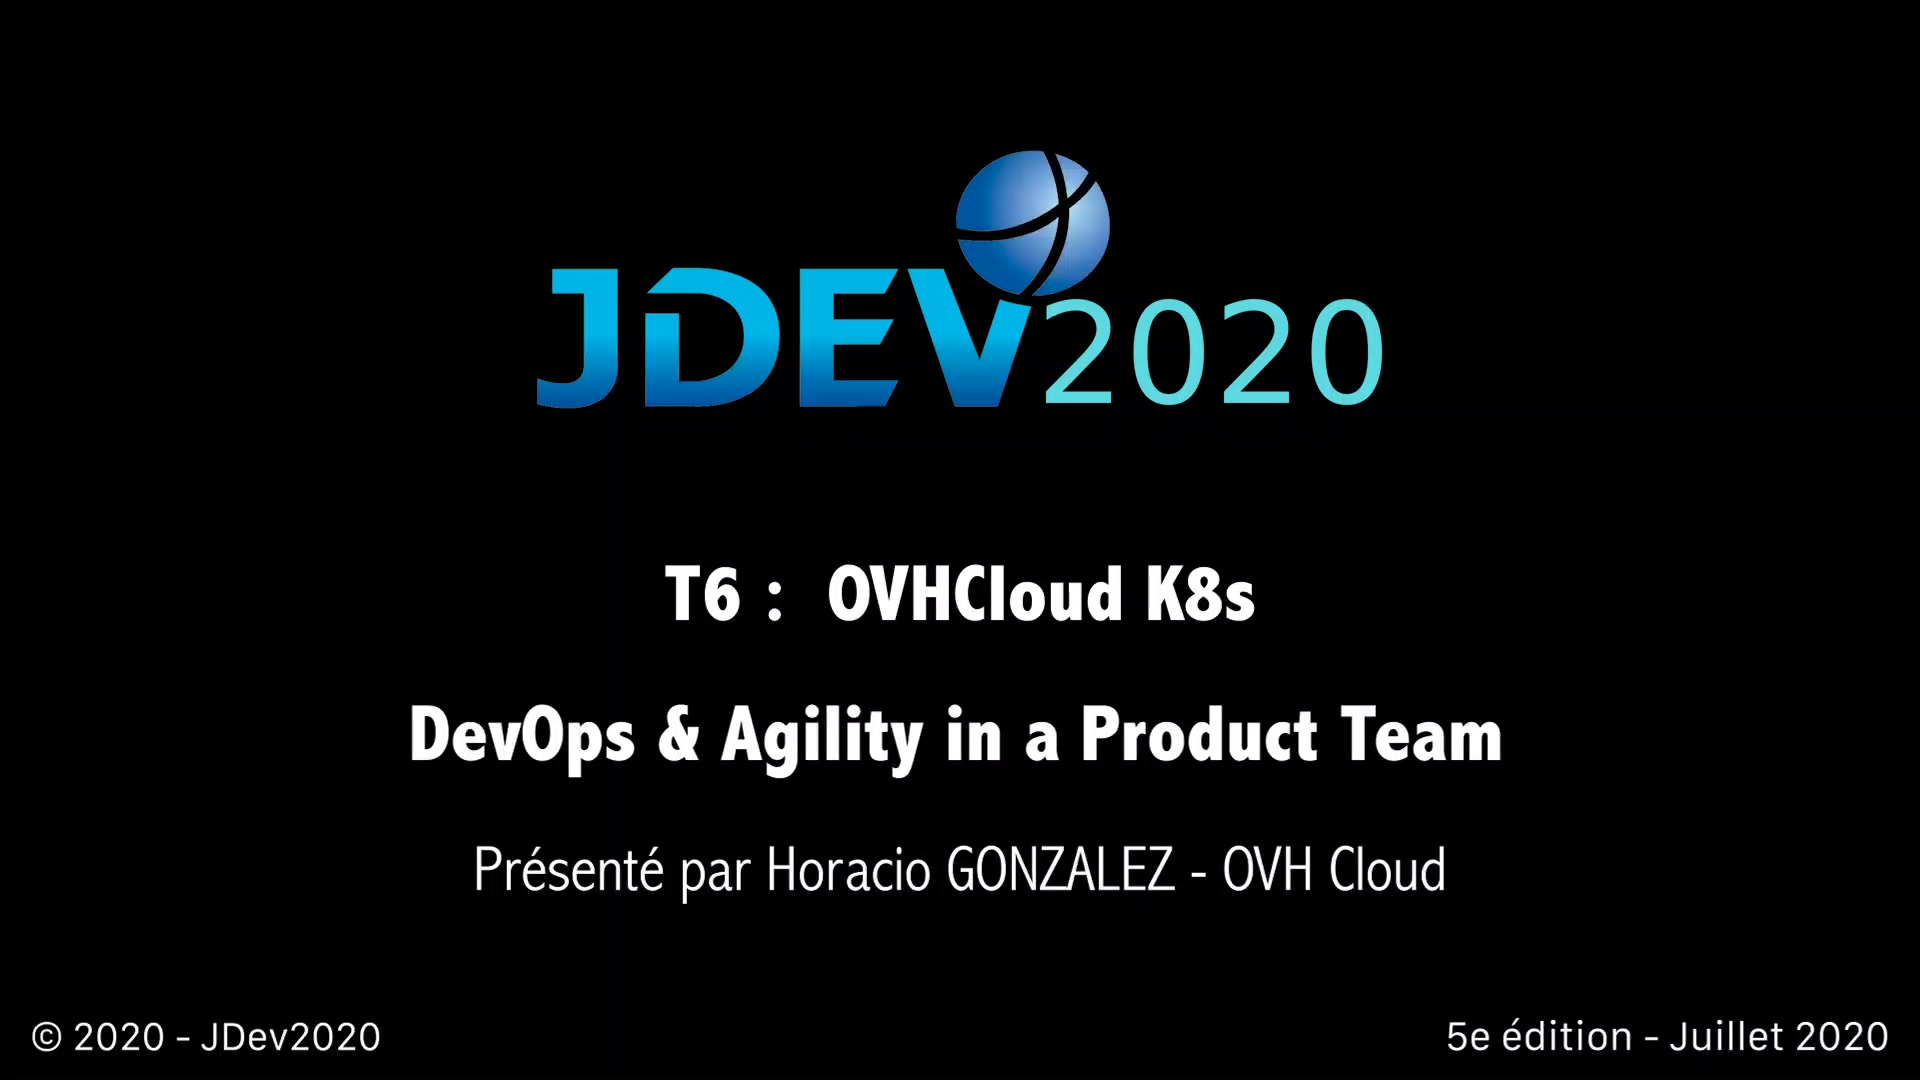 JDev2020 : T6 : OVCloud K8S - DevOps et Agilité dans une équipe Produit